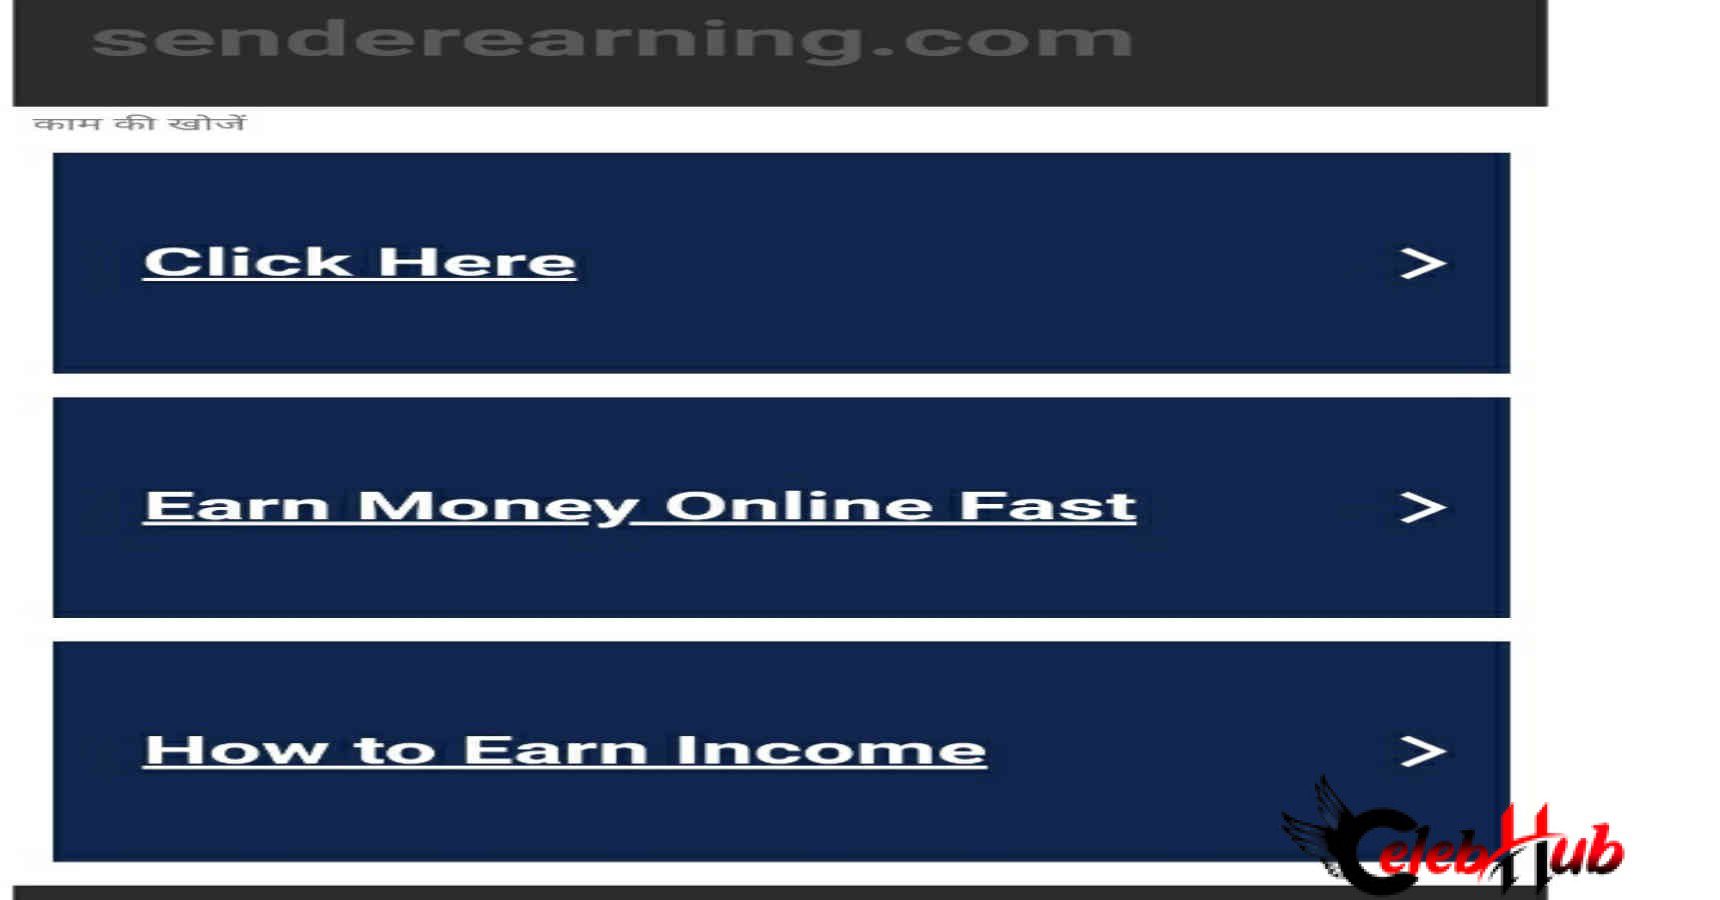 Sender earning.com